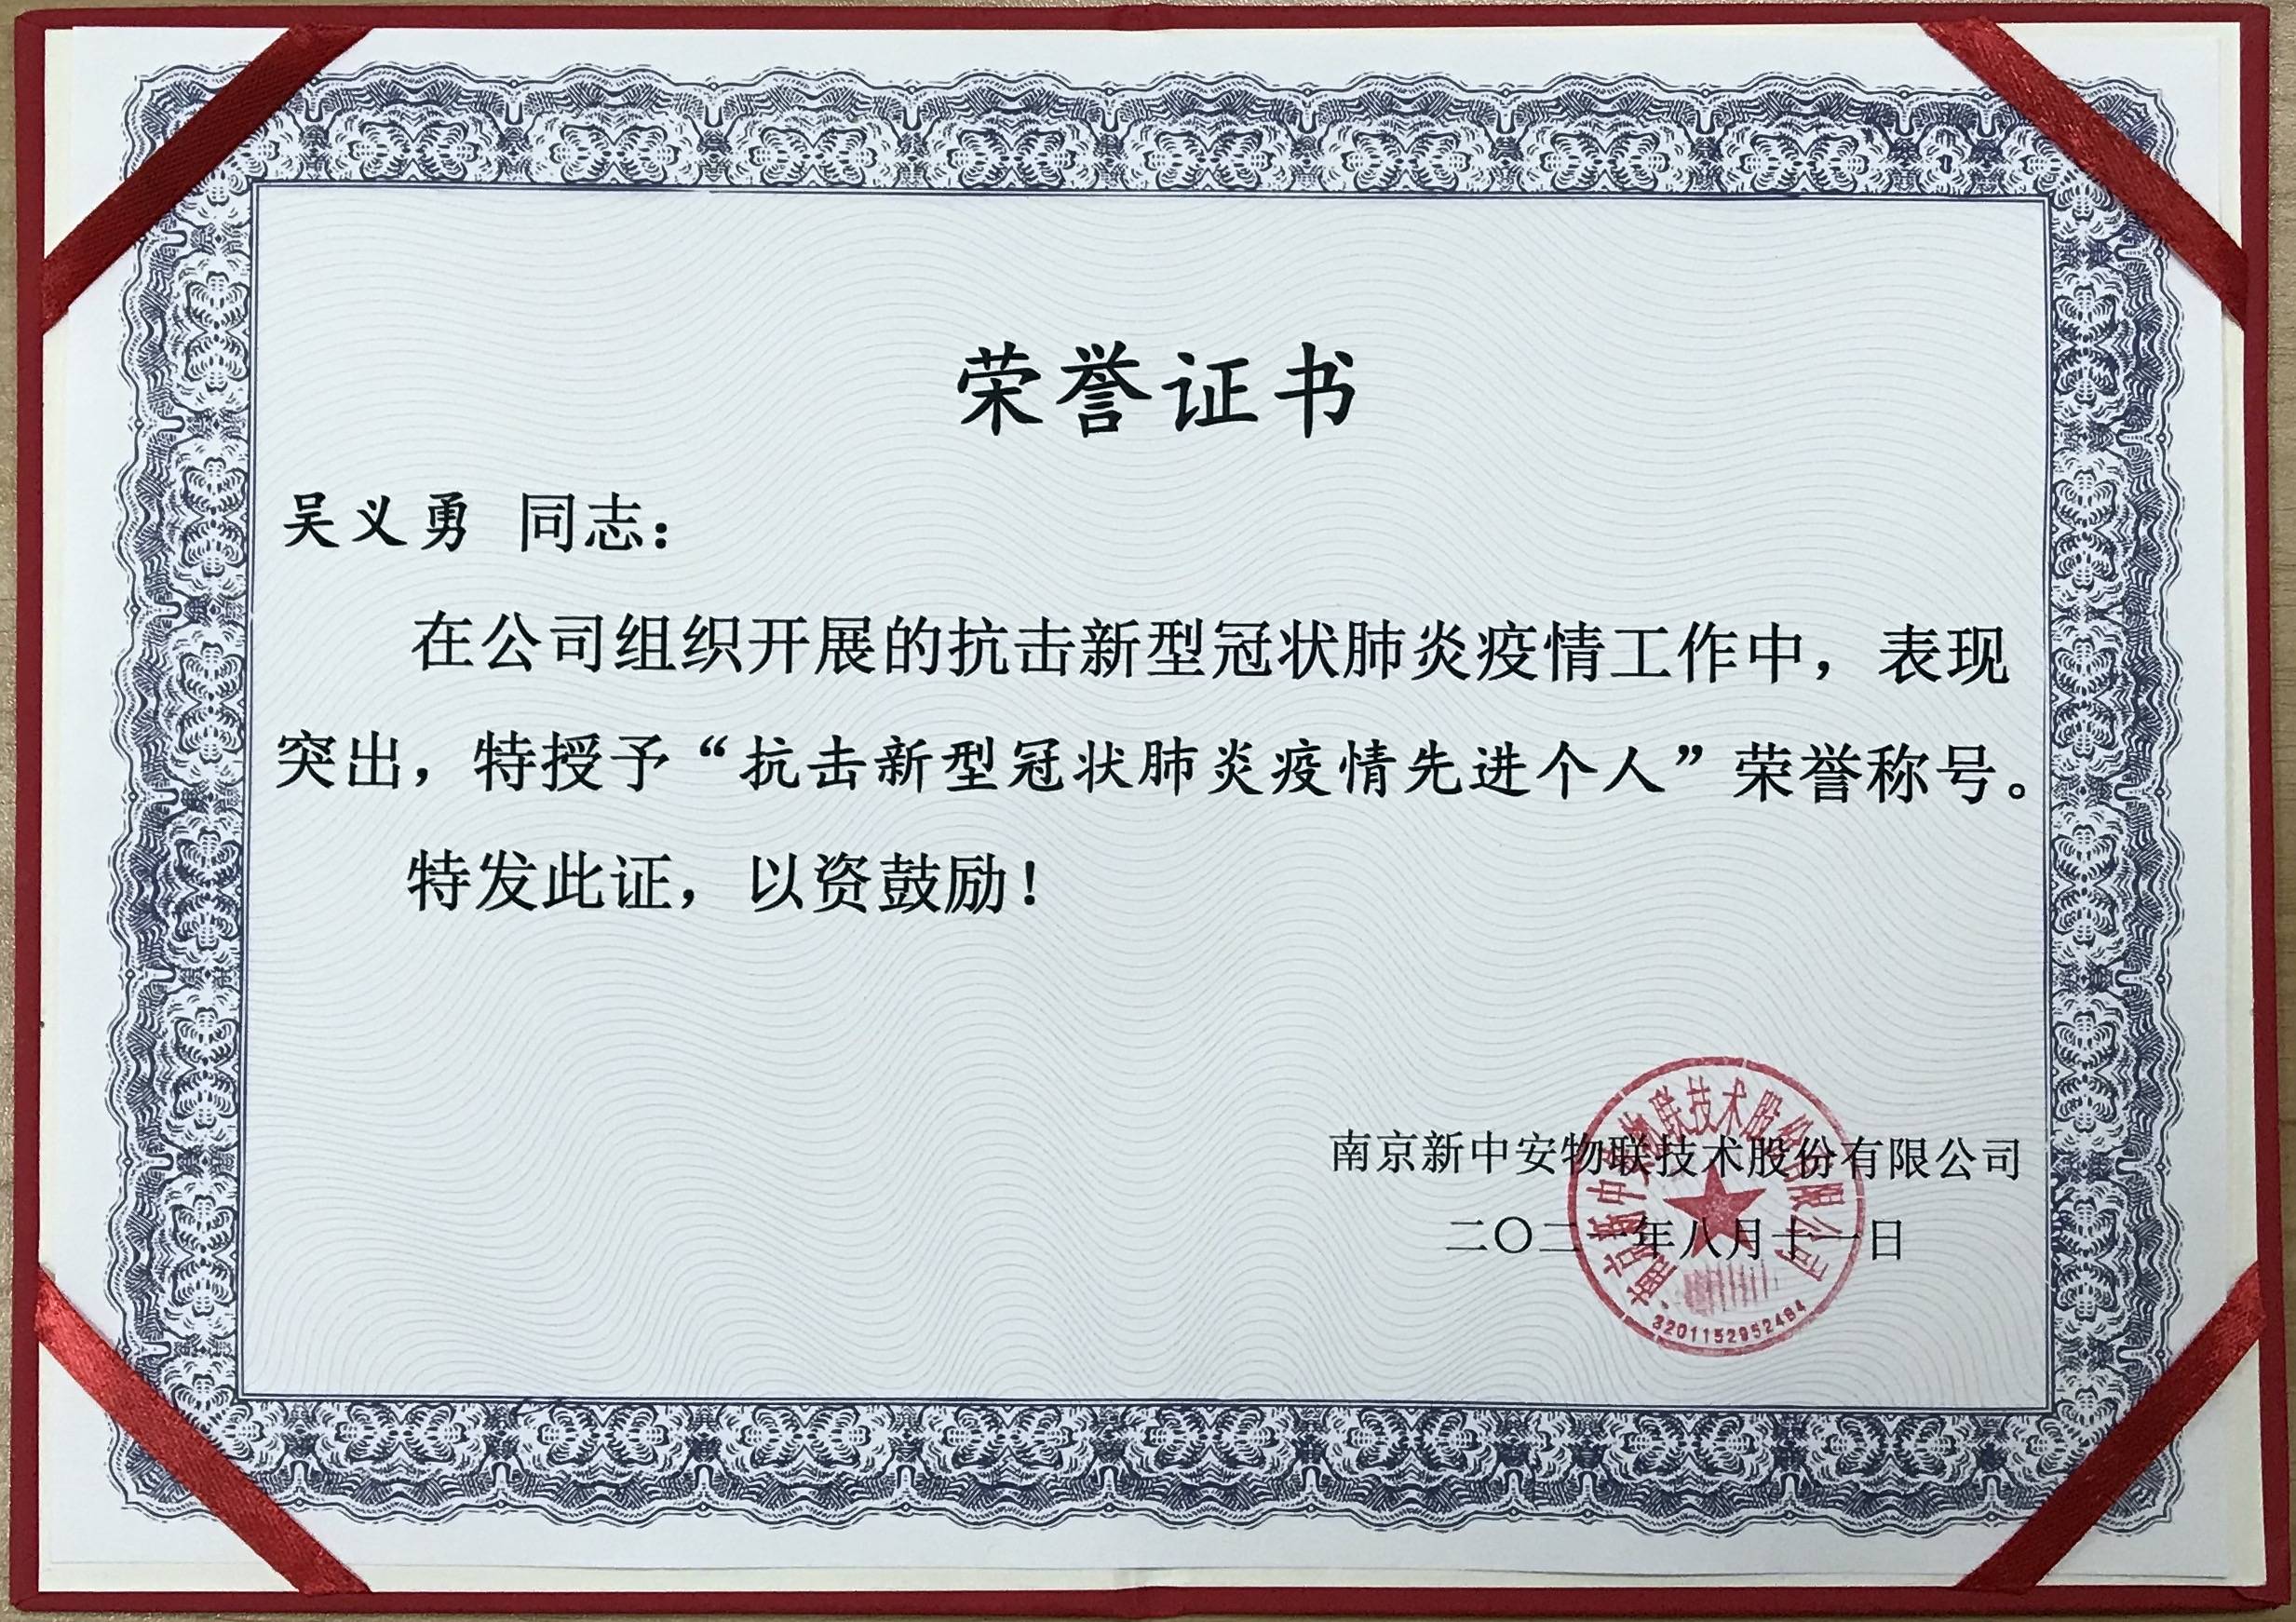 决定授予吴义勇先生,于健先生抗疫先进个人称号,颁发荣誉证书与奖金